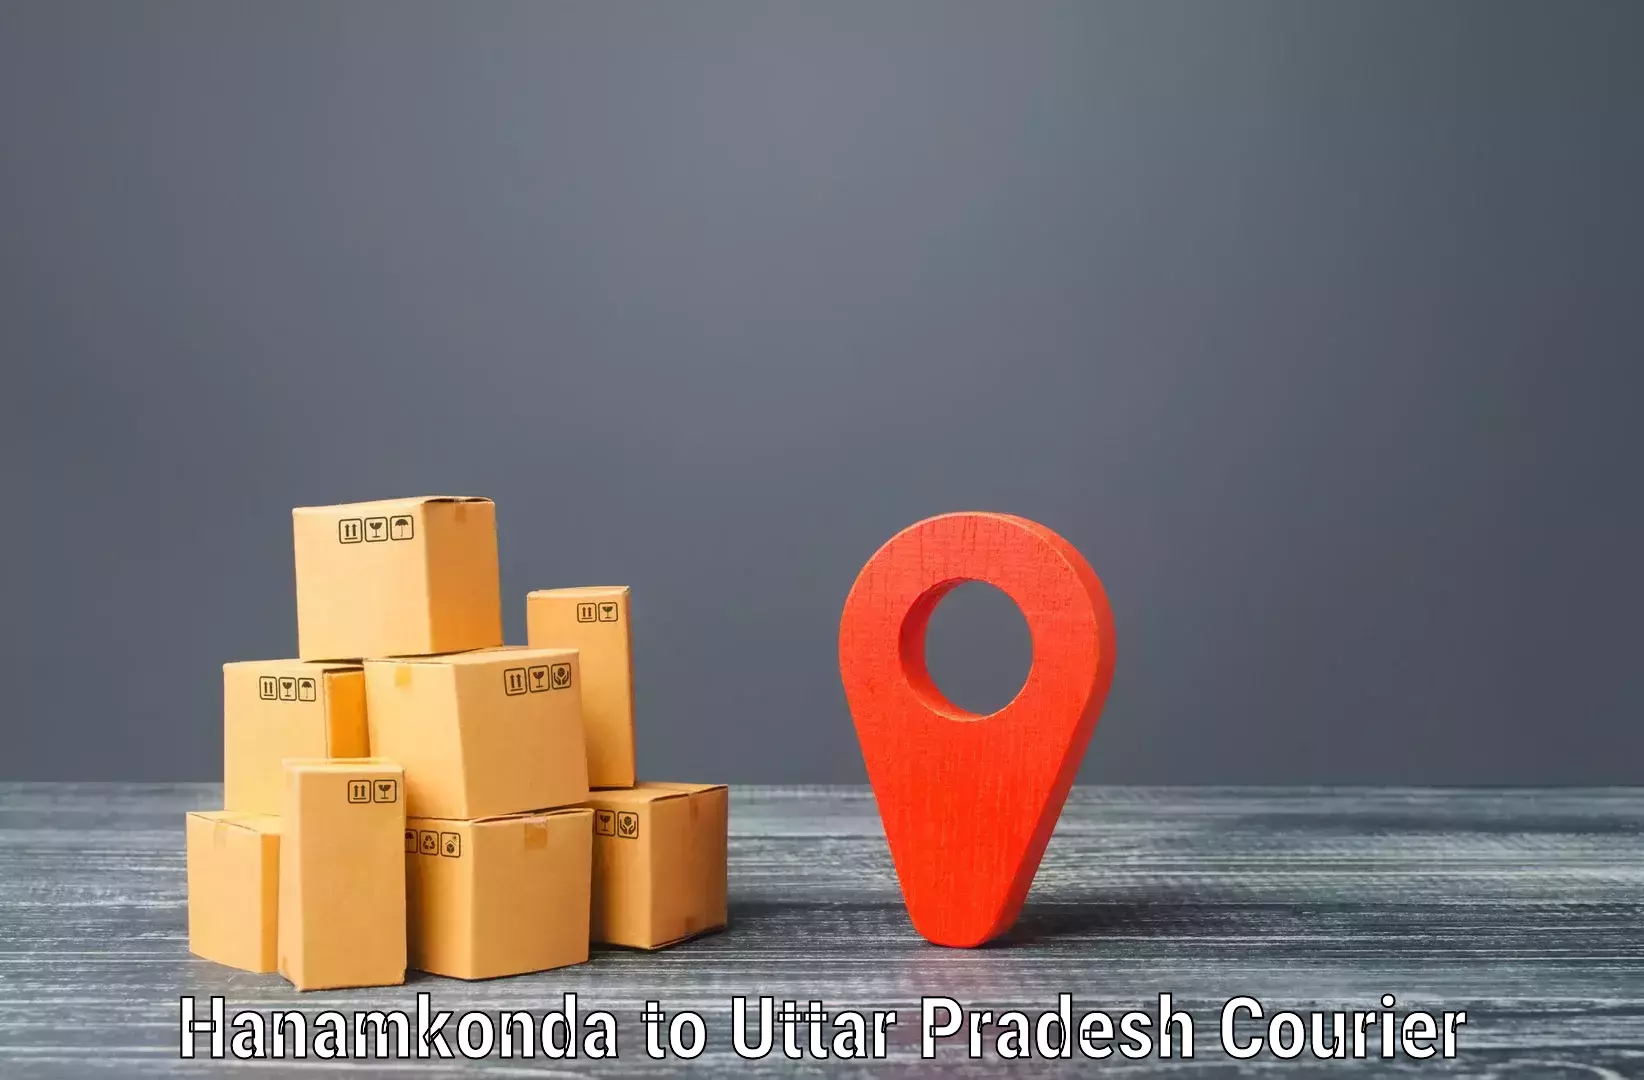 Customizable shipping options Hanamkonda to Shahganj